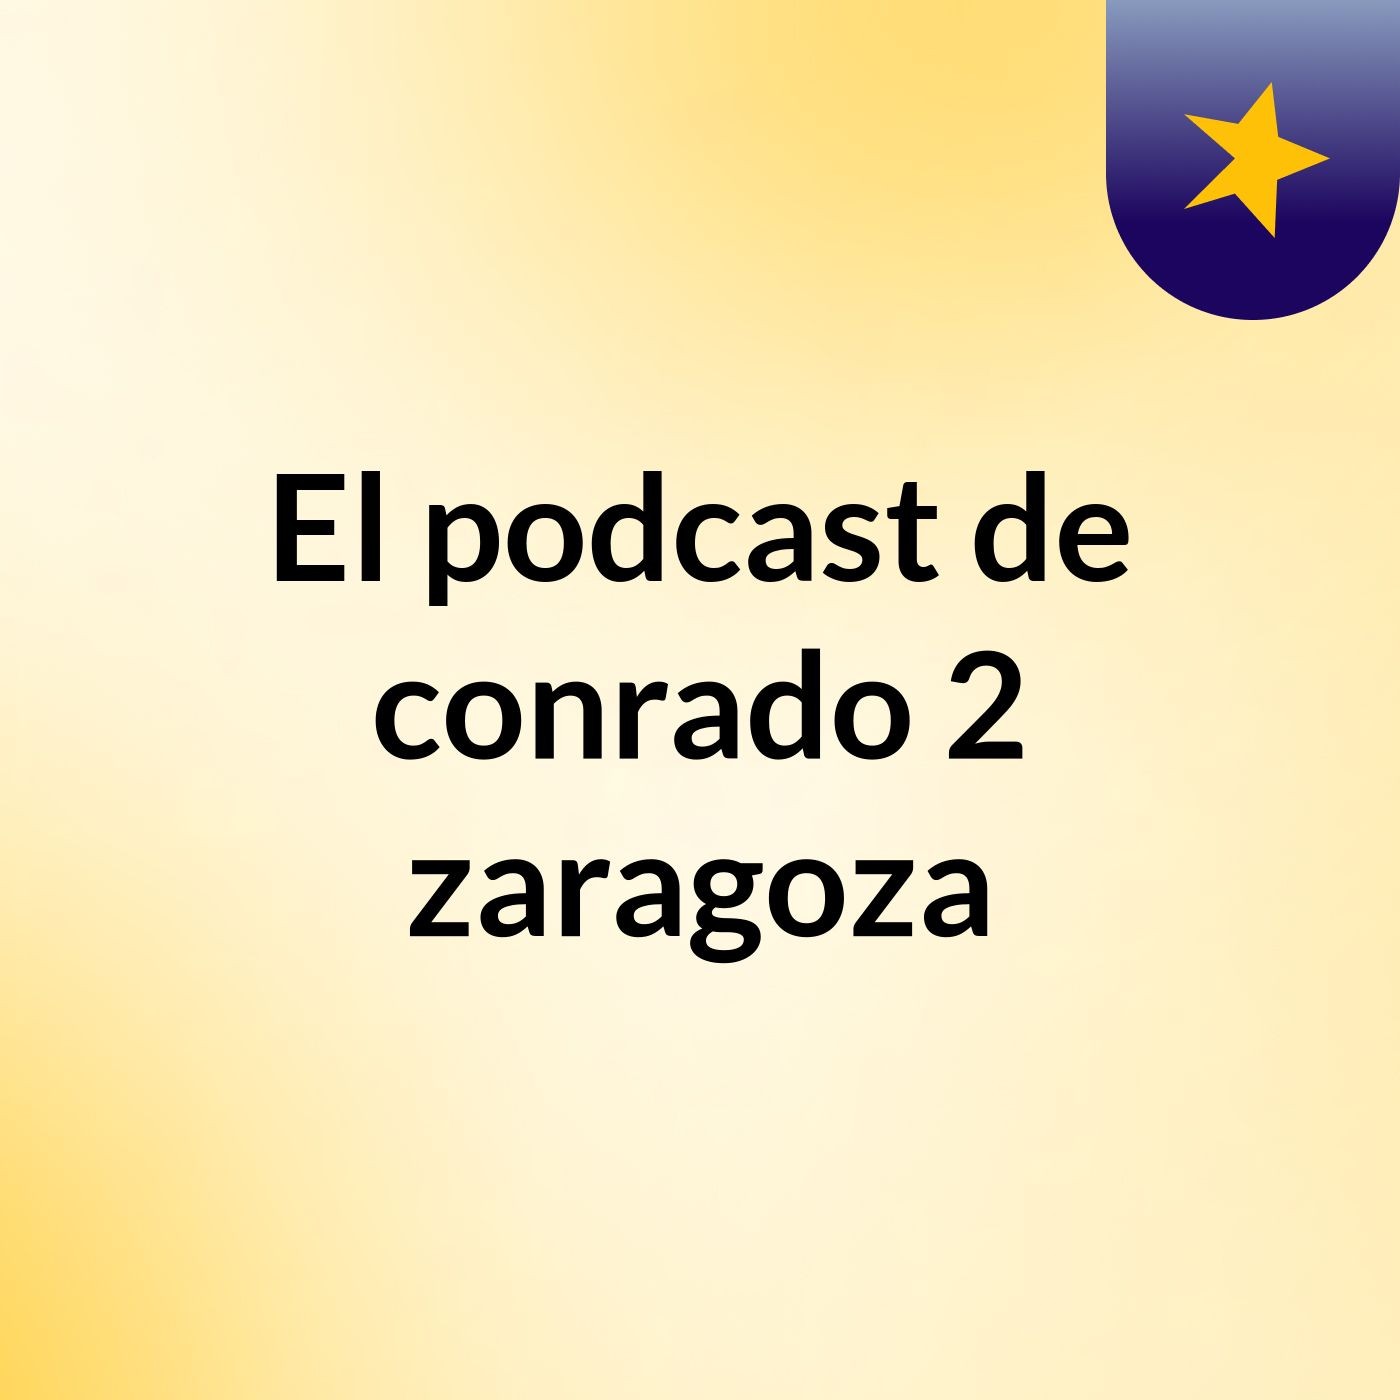 Episodio 19 - El podcast de conrado 2 zaragoza